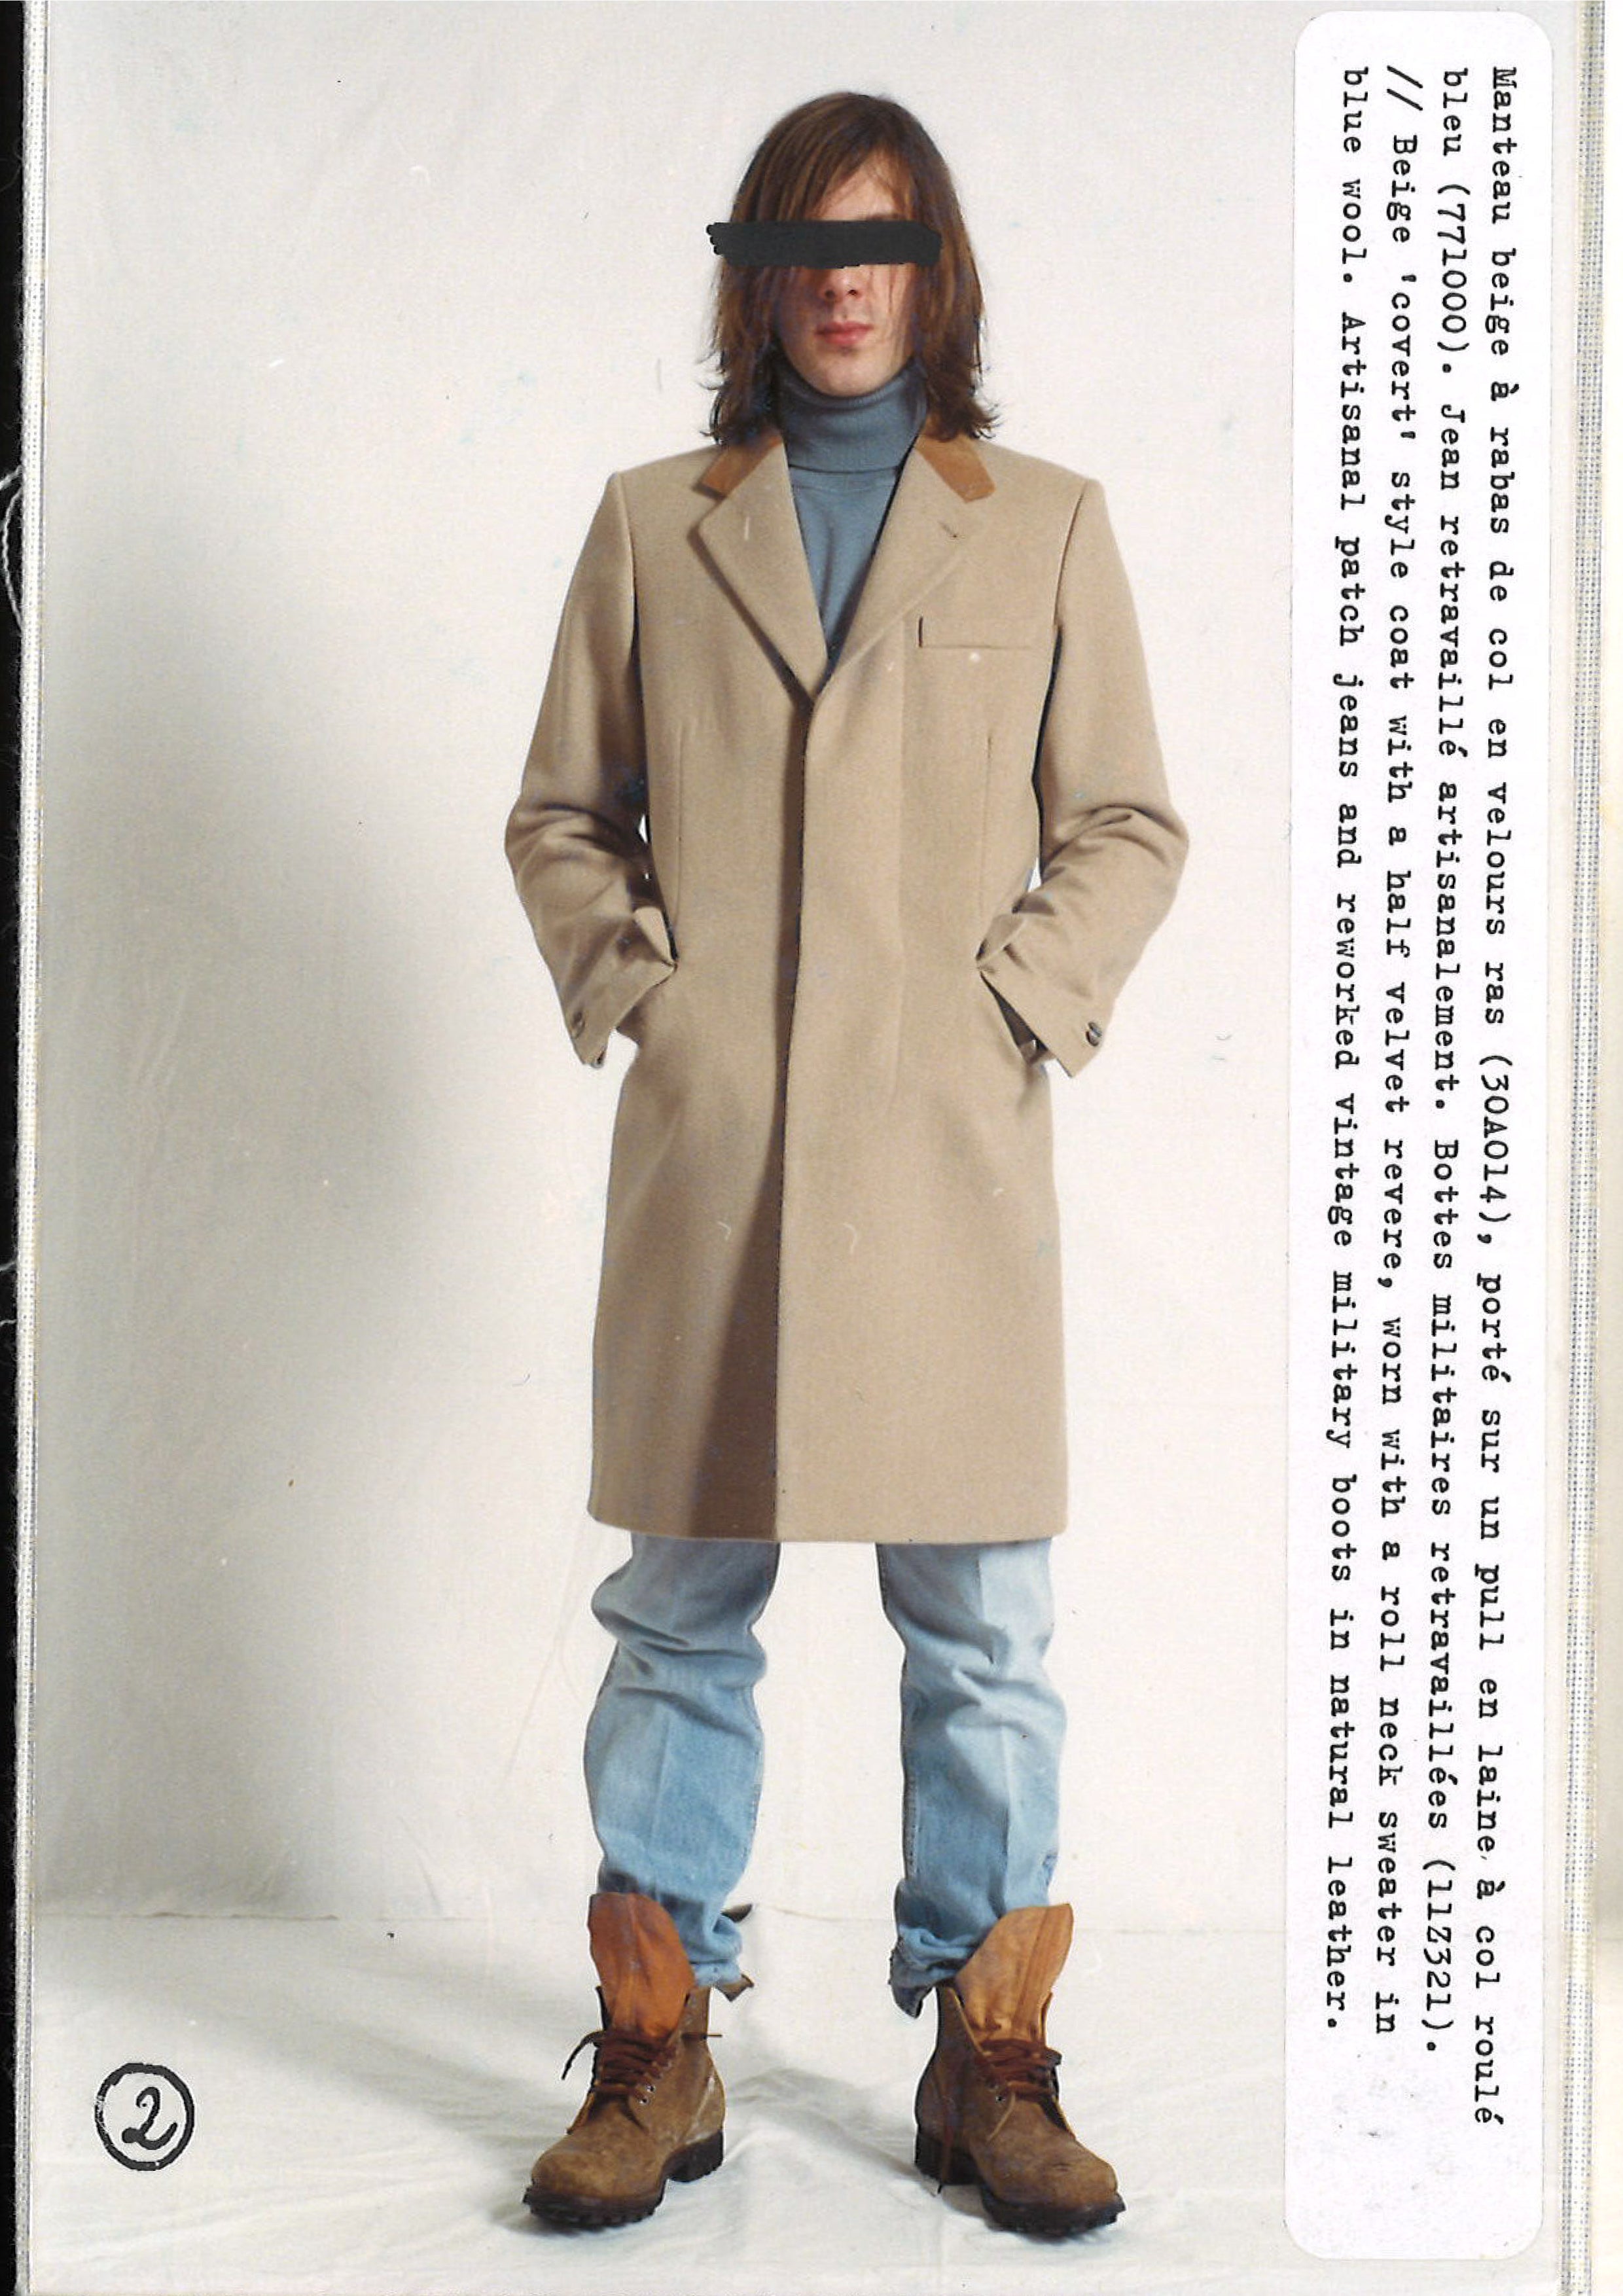 Maison Martin Margiela Lookbook
Menswear Collection Autumn/Winter 2002-03